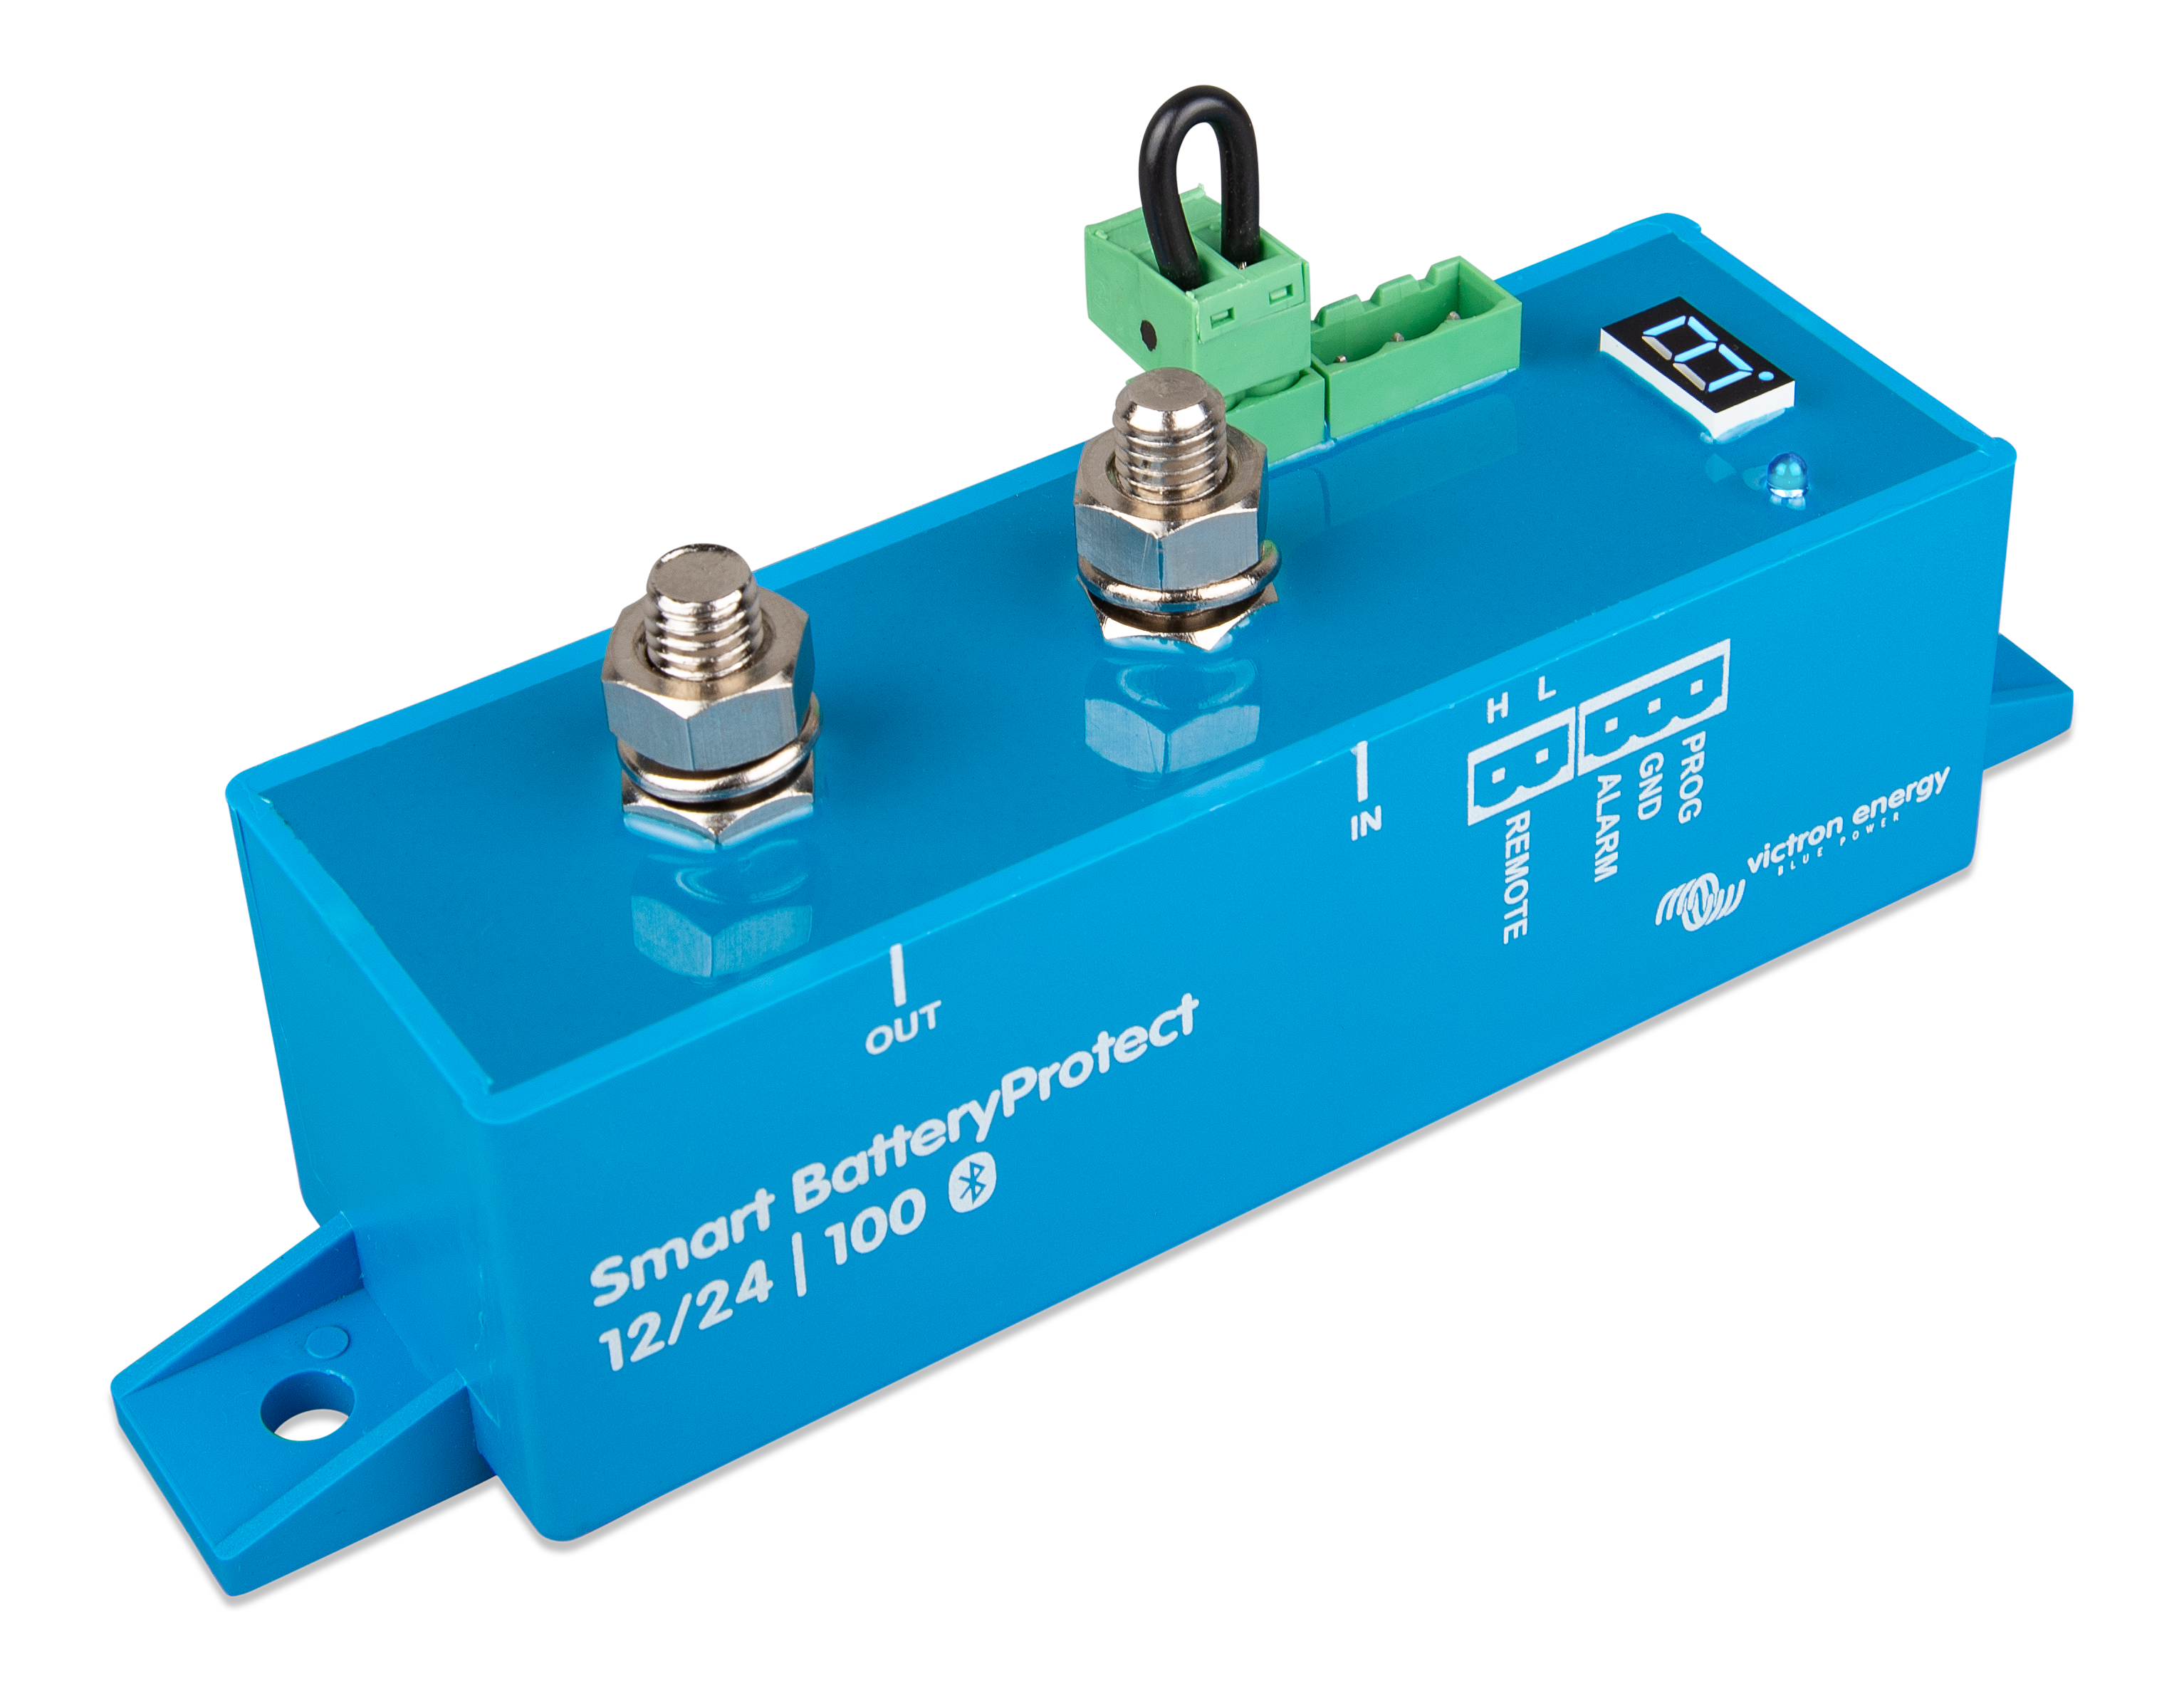 Adgang Mordrin Forlænge Smart BatteryProtect - Victron Energy